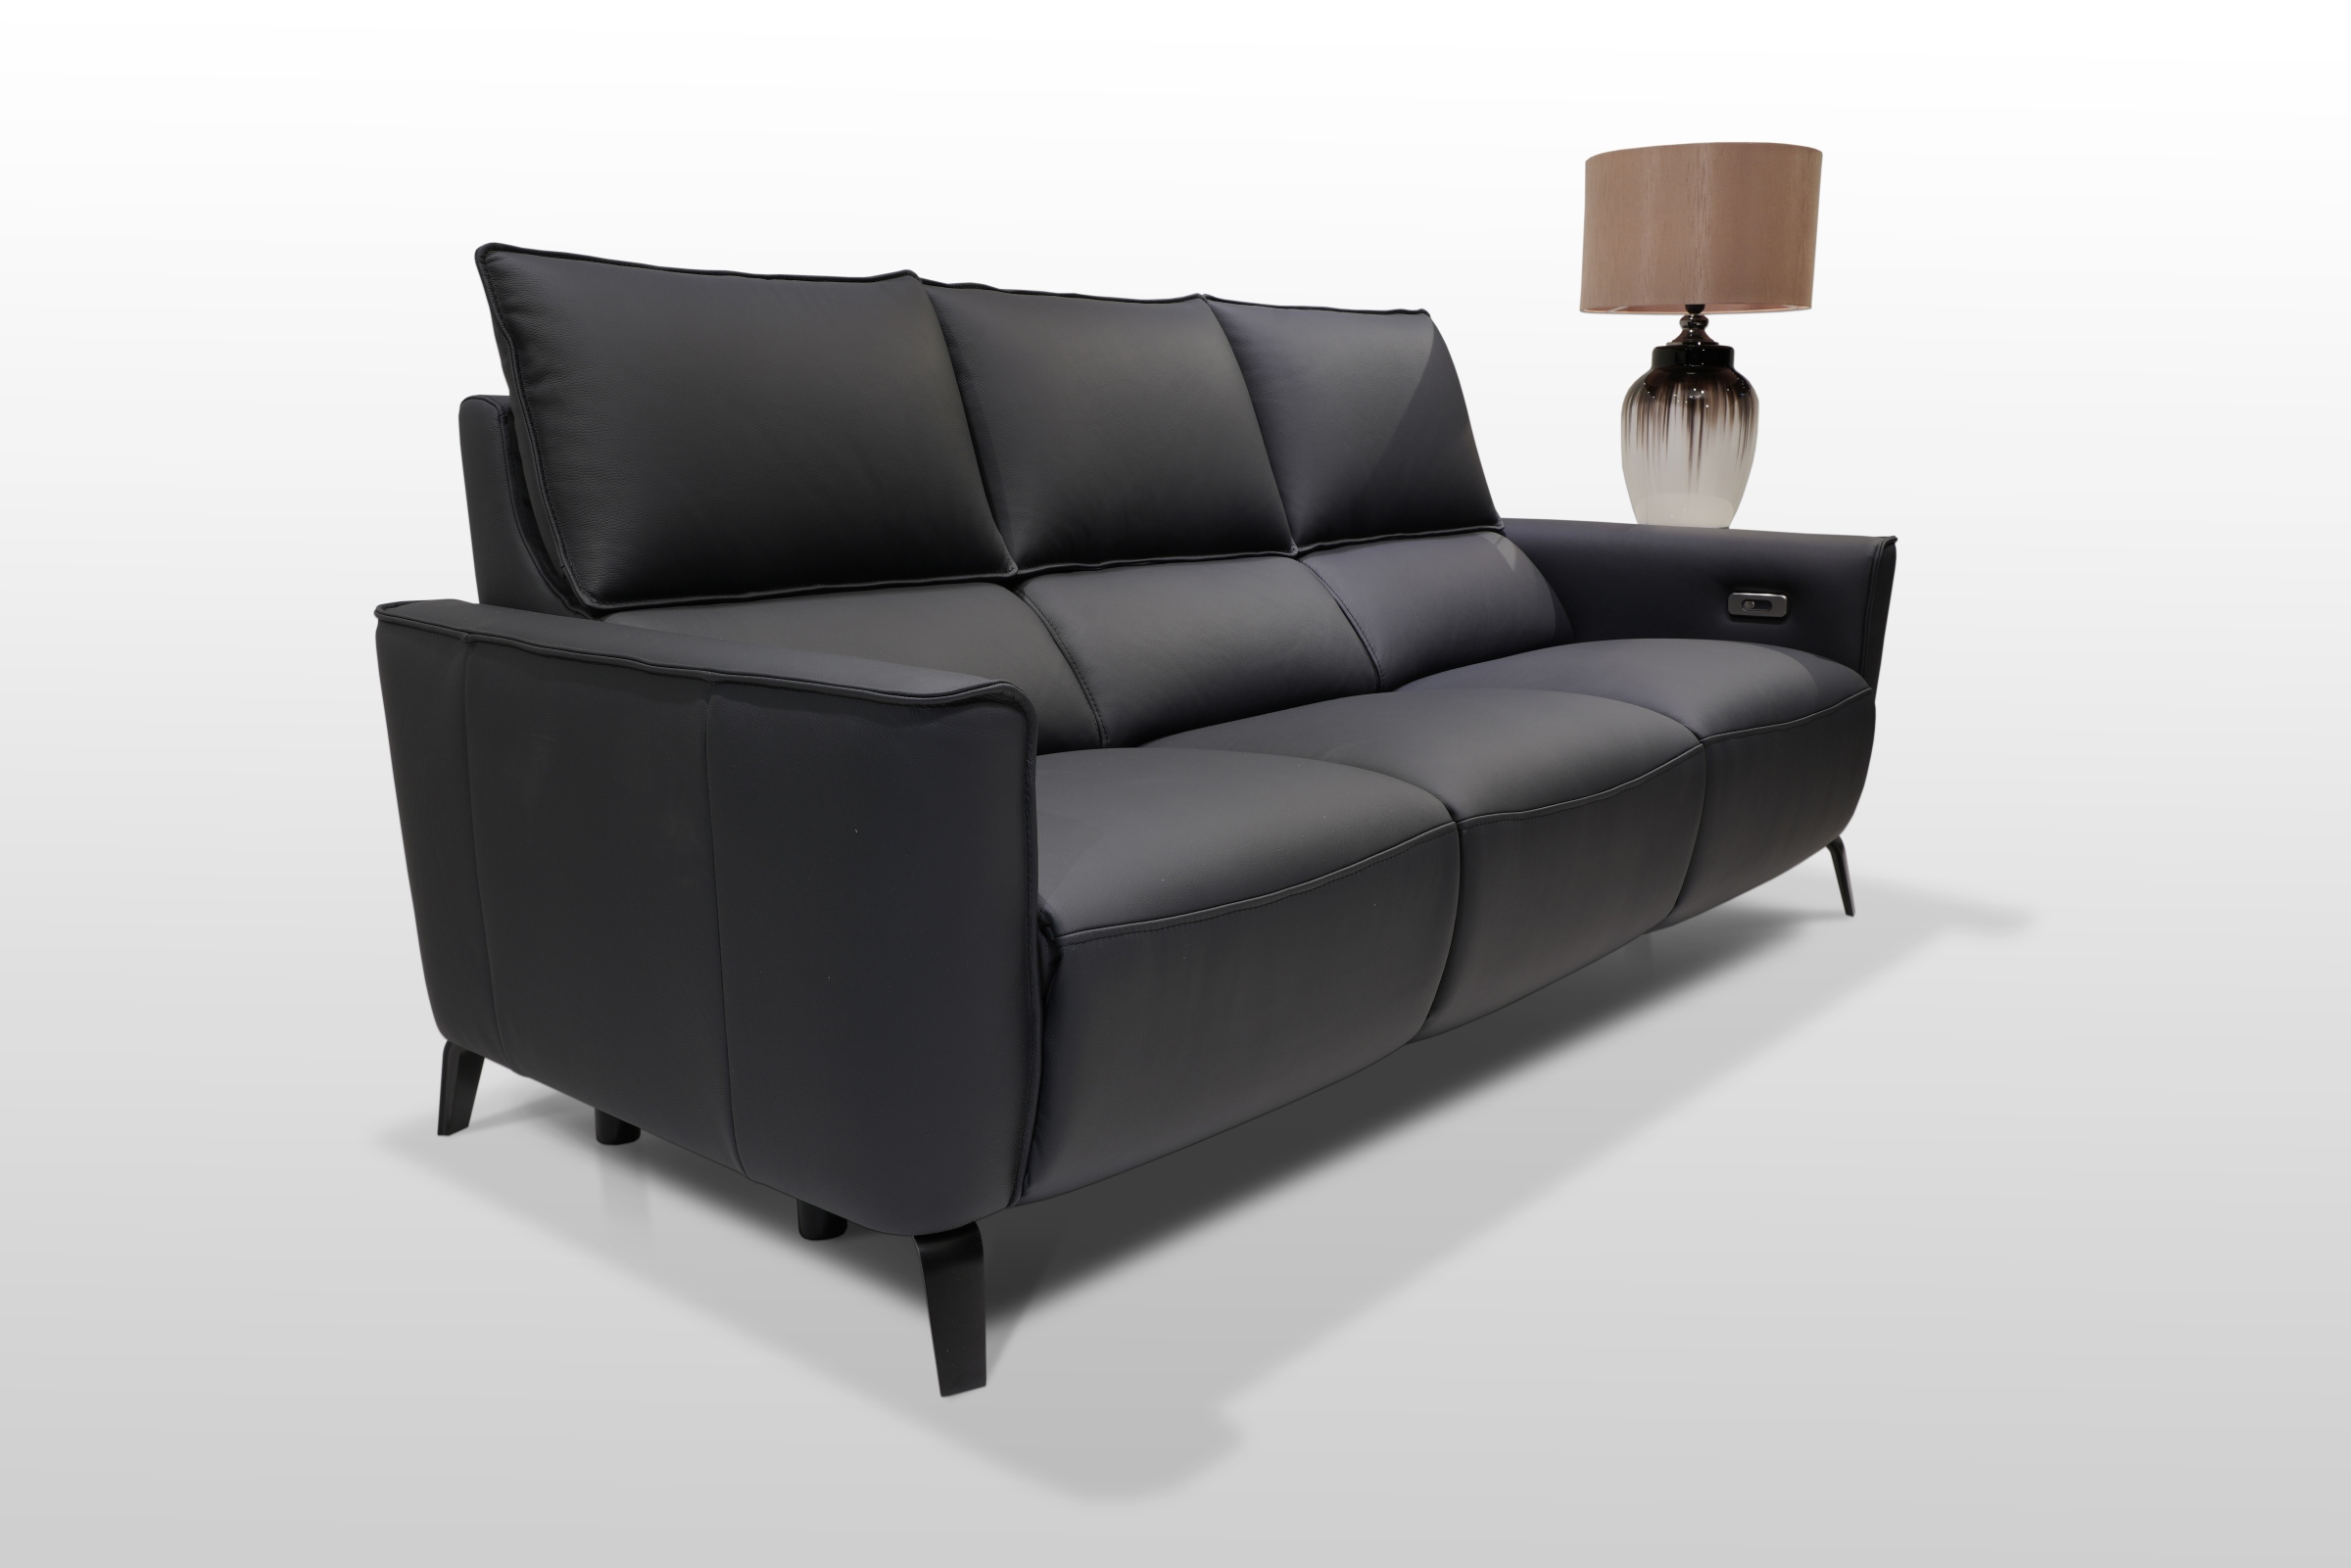 Sofa trzysiedziskowa na metalowych nogach, wykonana z czarnej matowej skóry pochodzenia włoskiego